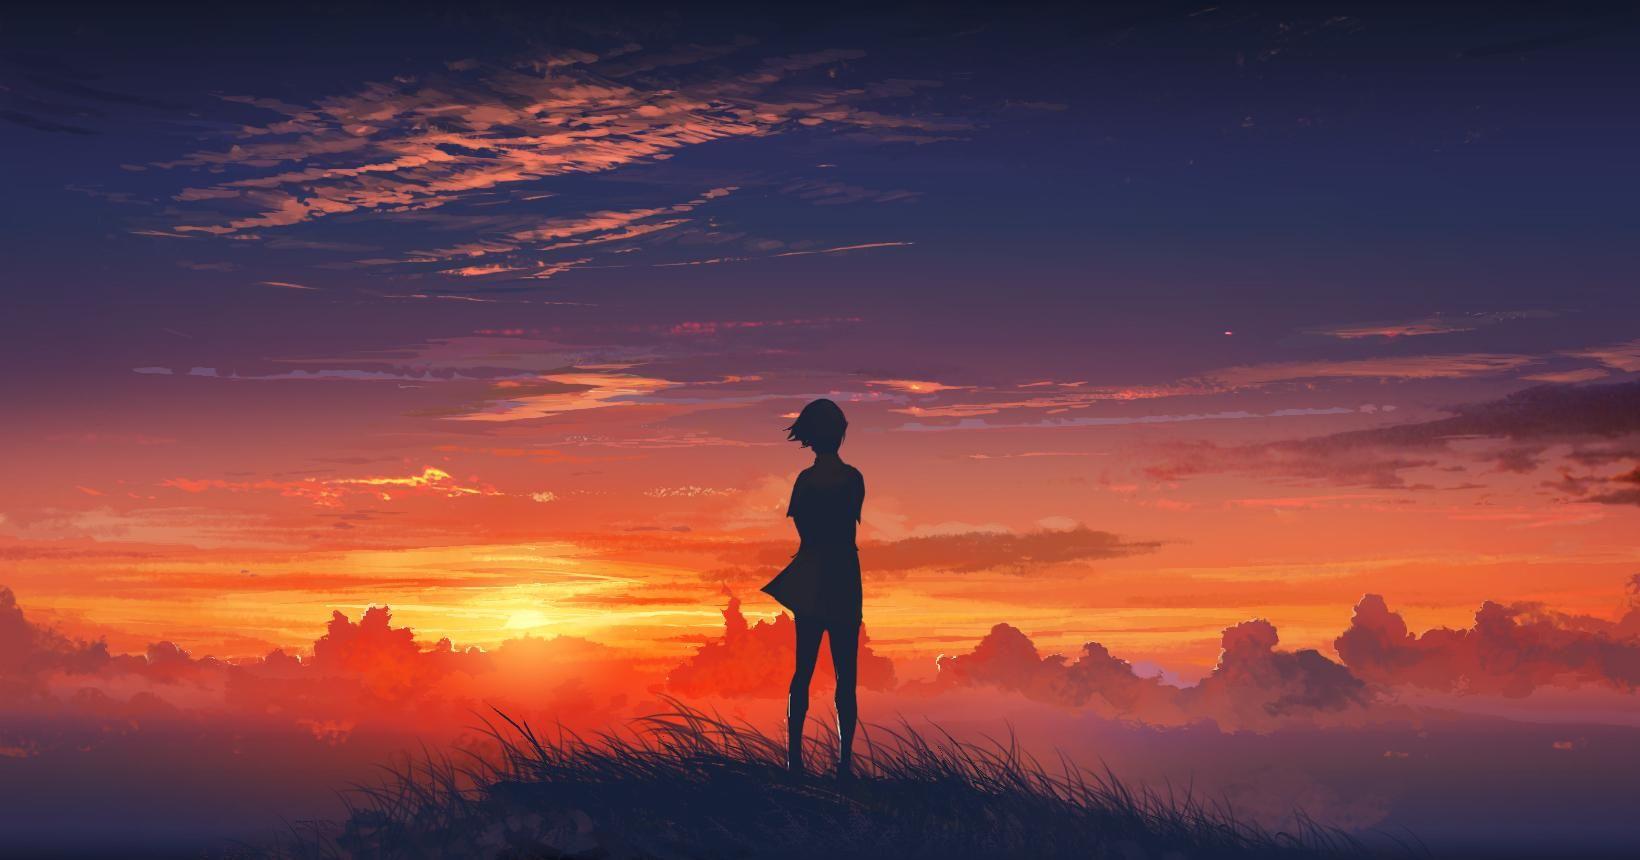 Sunset Anime. 風景デザイン, 夕焼け, アニメの風景